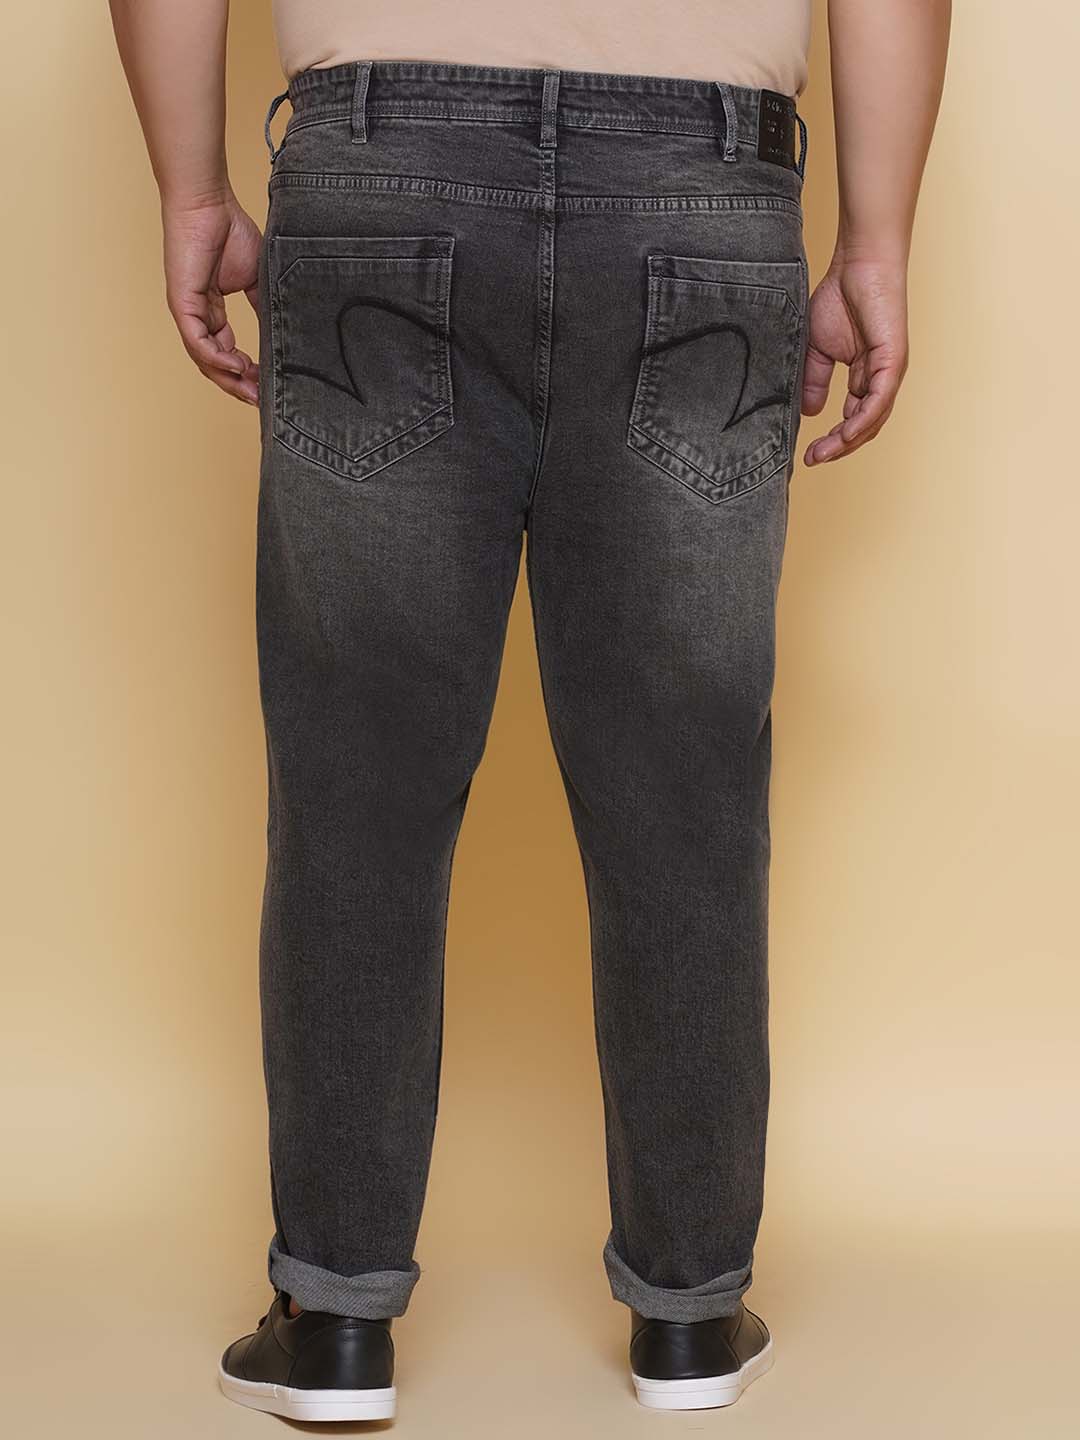 bottomwear/jeans/EJPJ25136/ejpj25136-5.jpg